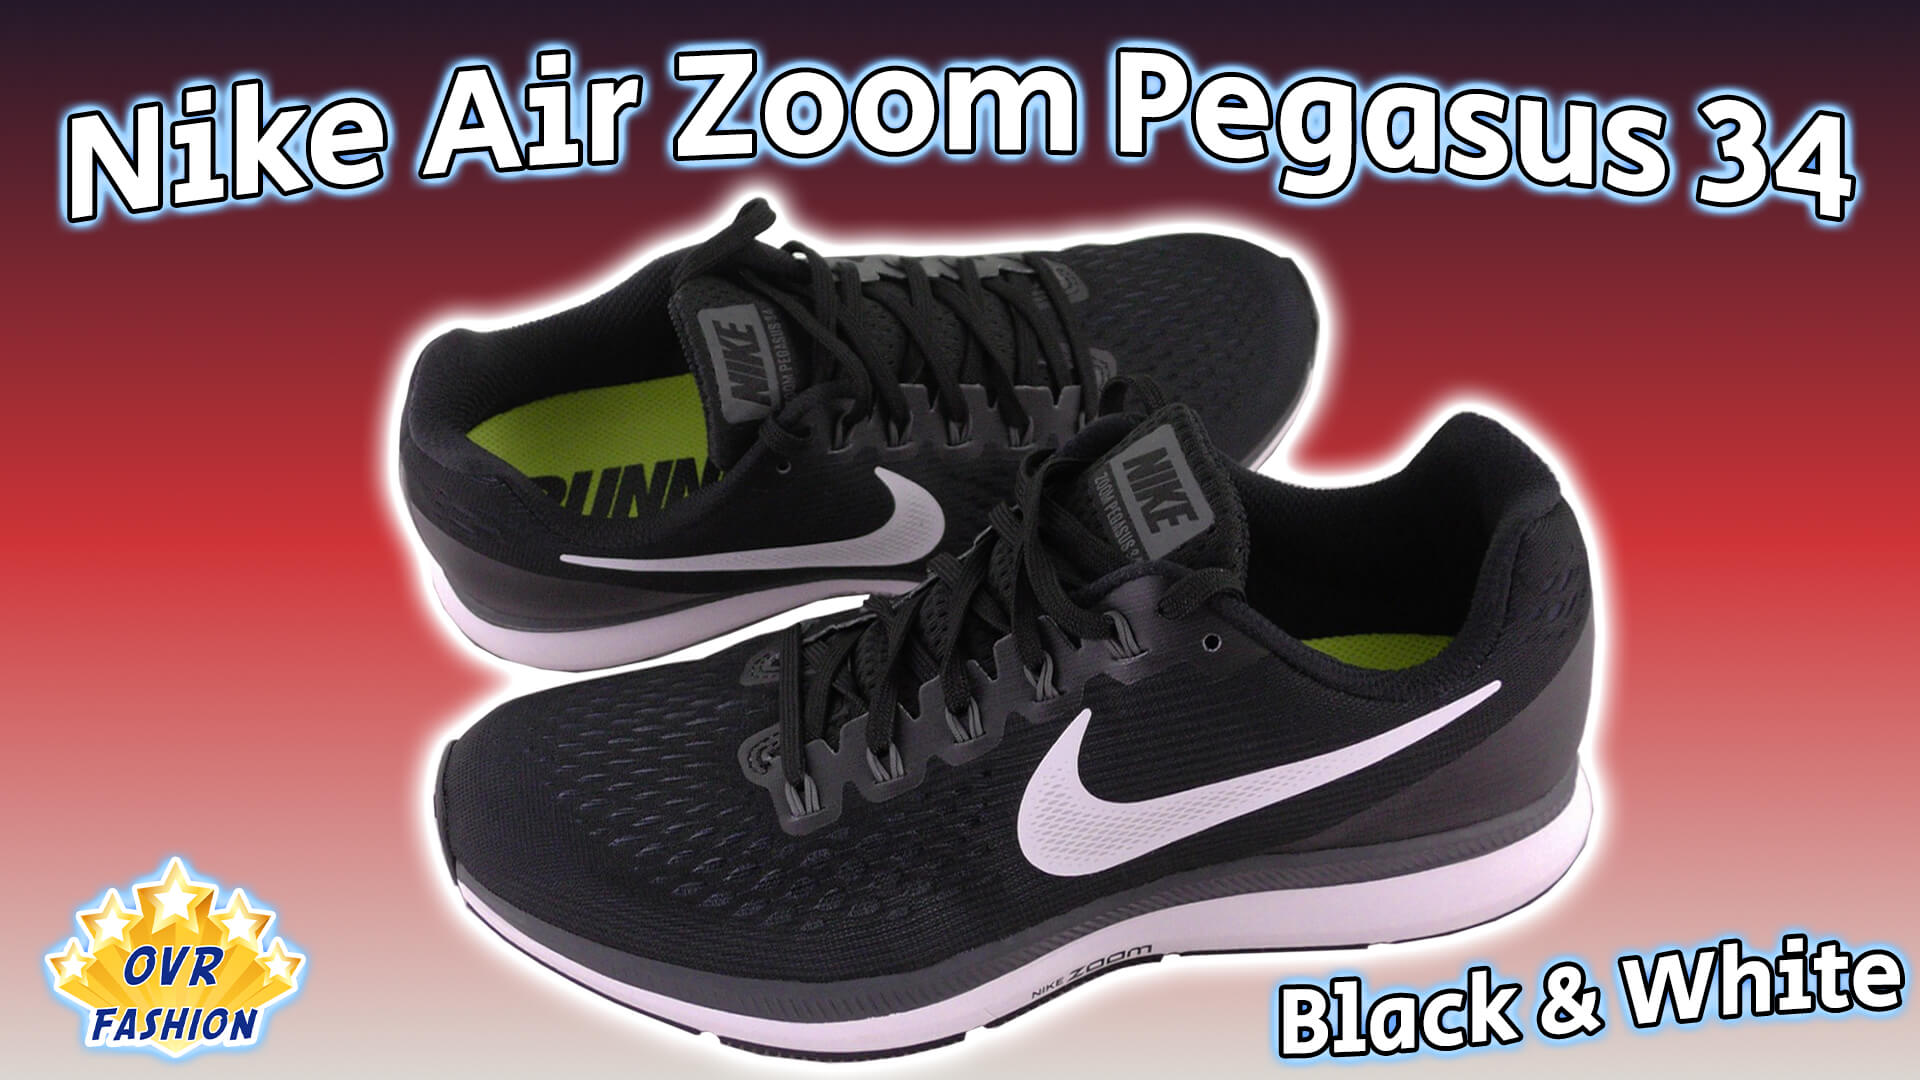 Arqueológico Prevención Sin cabeza Nike Air Zoom Pegasus 34 Black & White (Review)